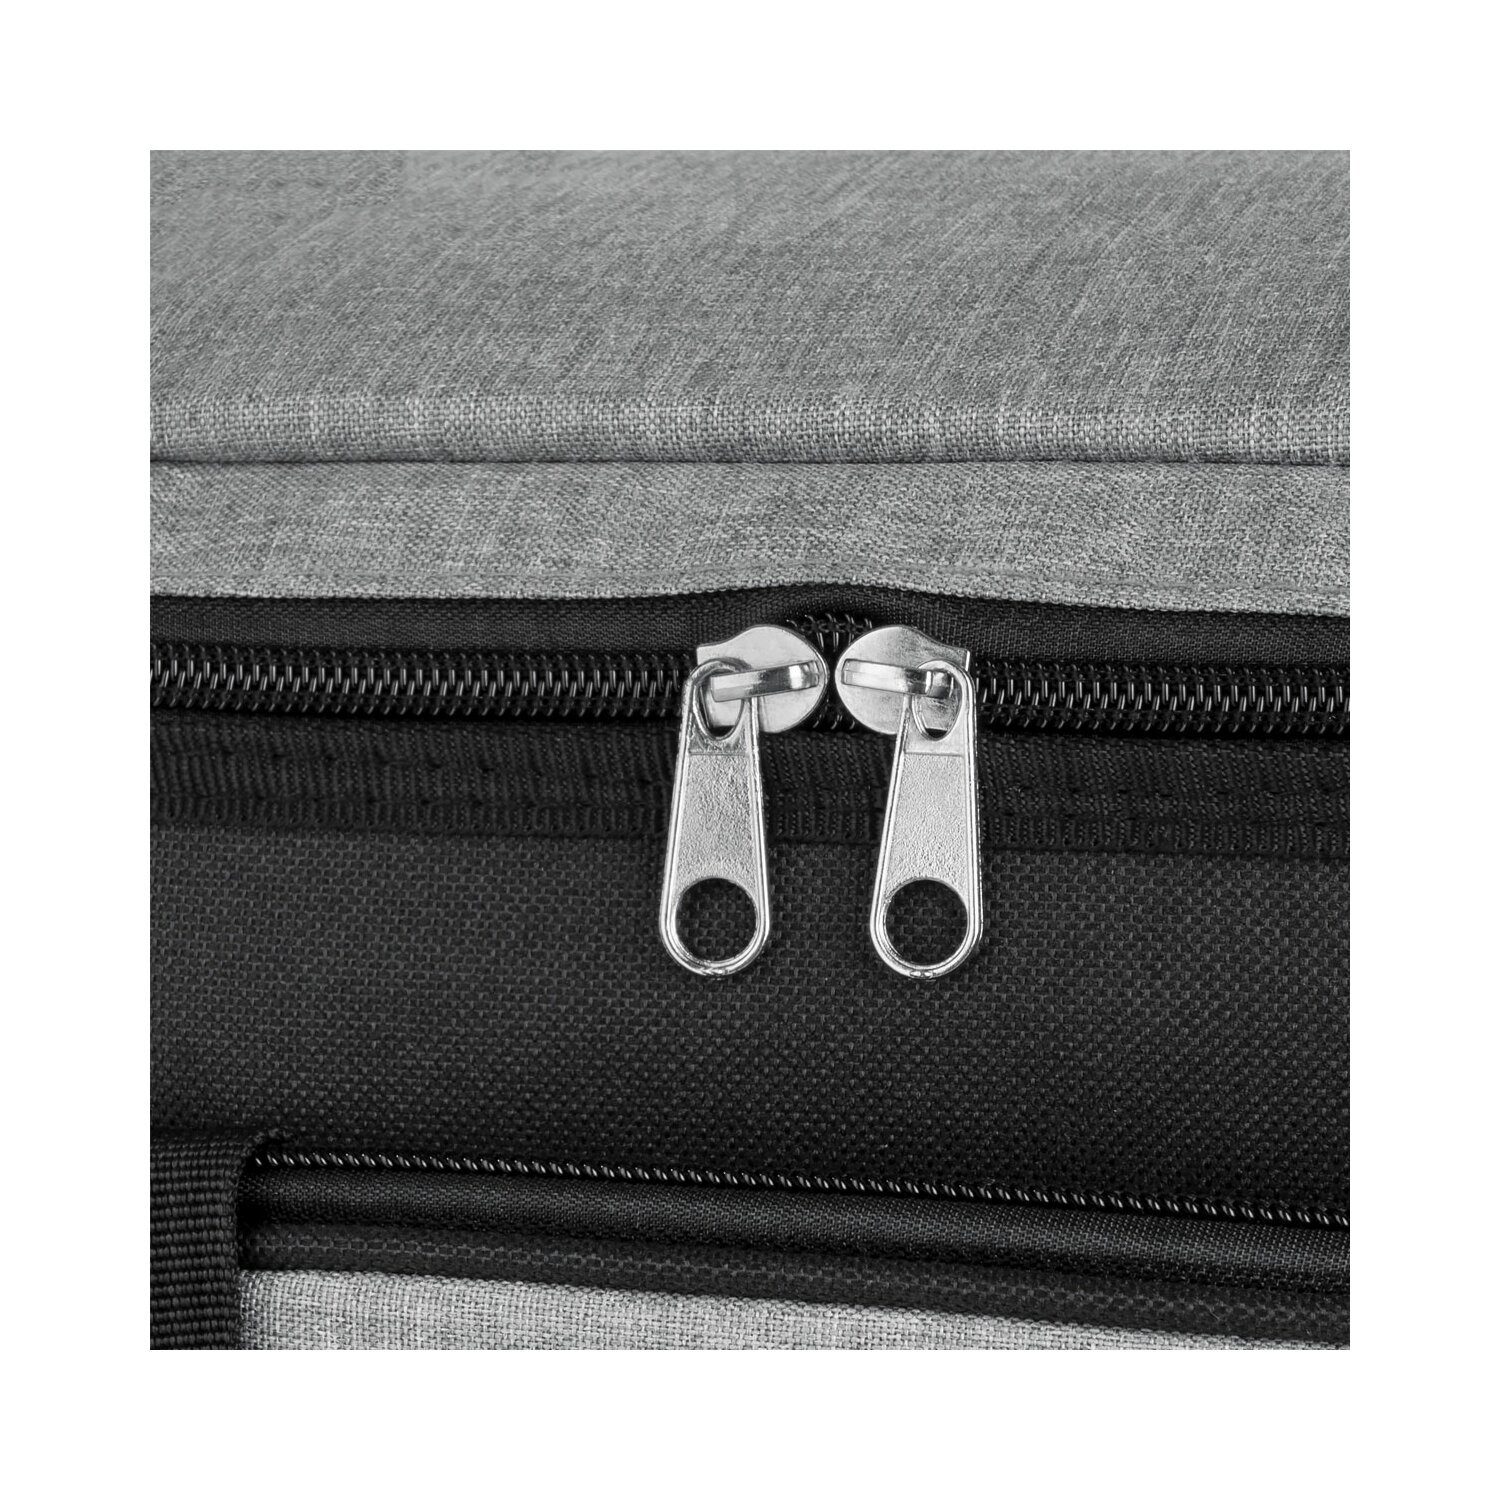 Lunchbox, Lunchbox für Grau Noveen Thermotasche Picknicktasche Tragbare